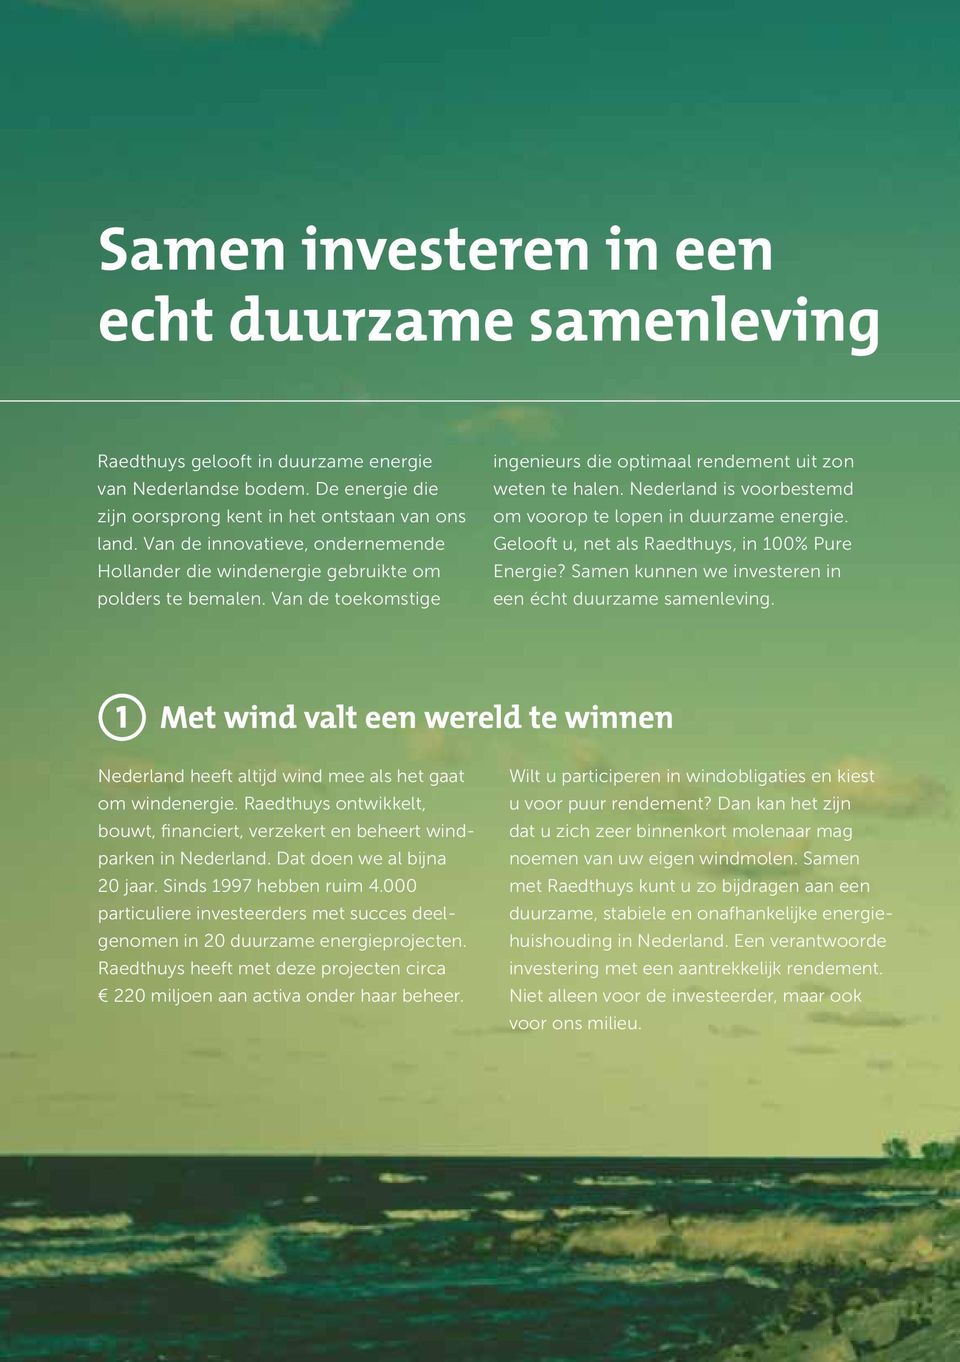 Nederland is voorbestemd om voorop te lopen in duurzame energie. Gelooft u, net als Raedthuys, in 100% Pure Energie? Samen kunnen we investeren in een écht duurzame samenleving.